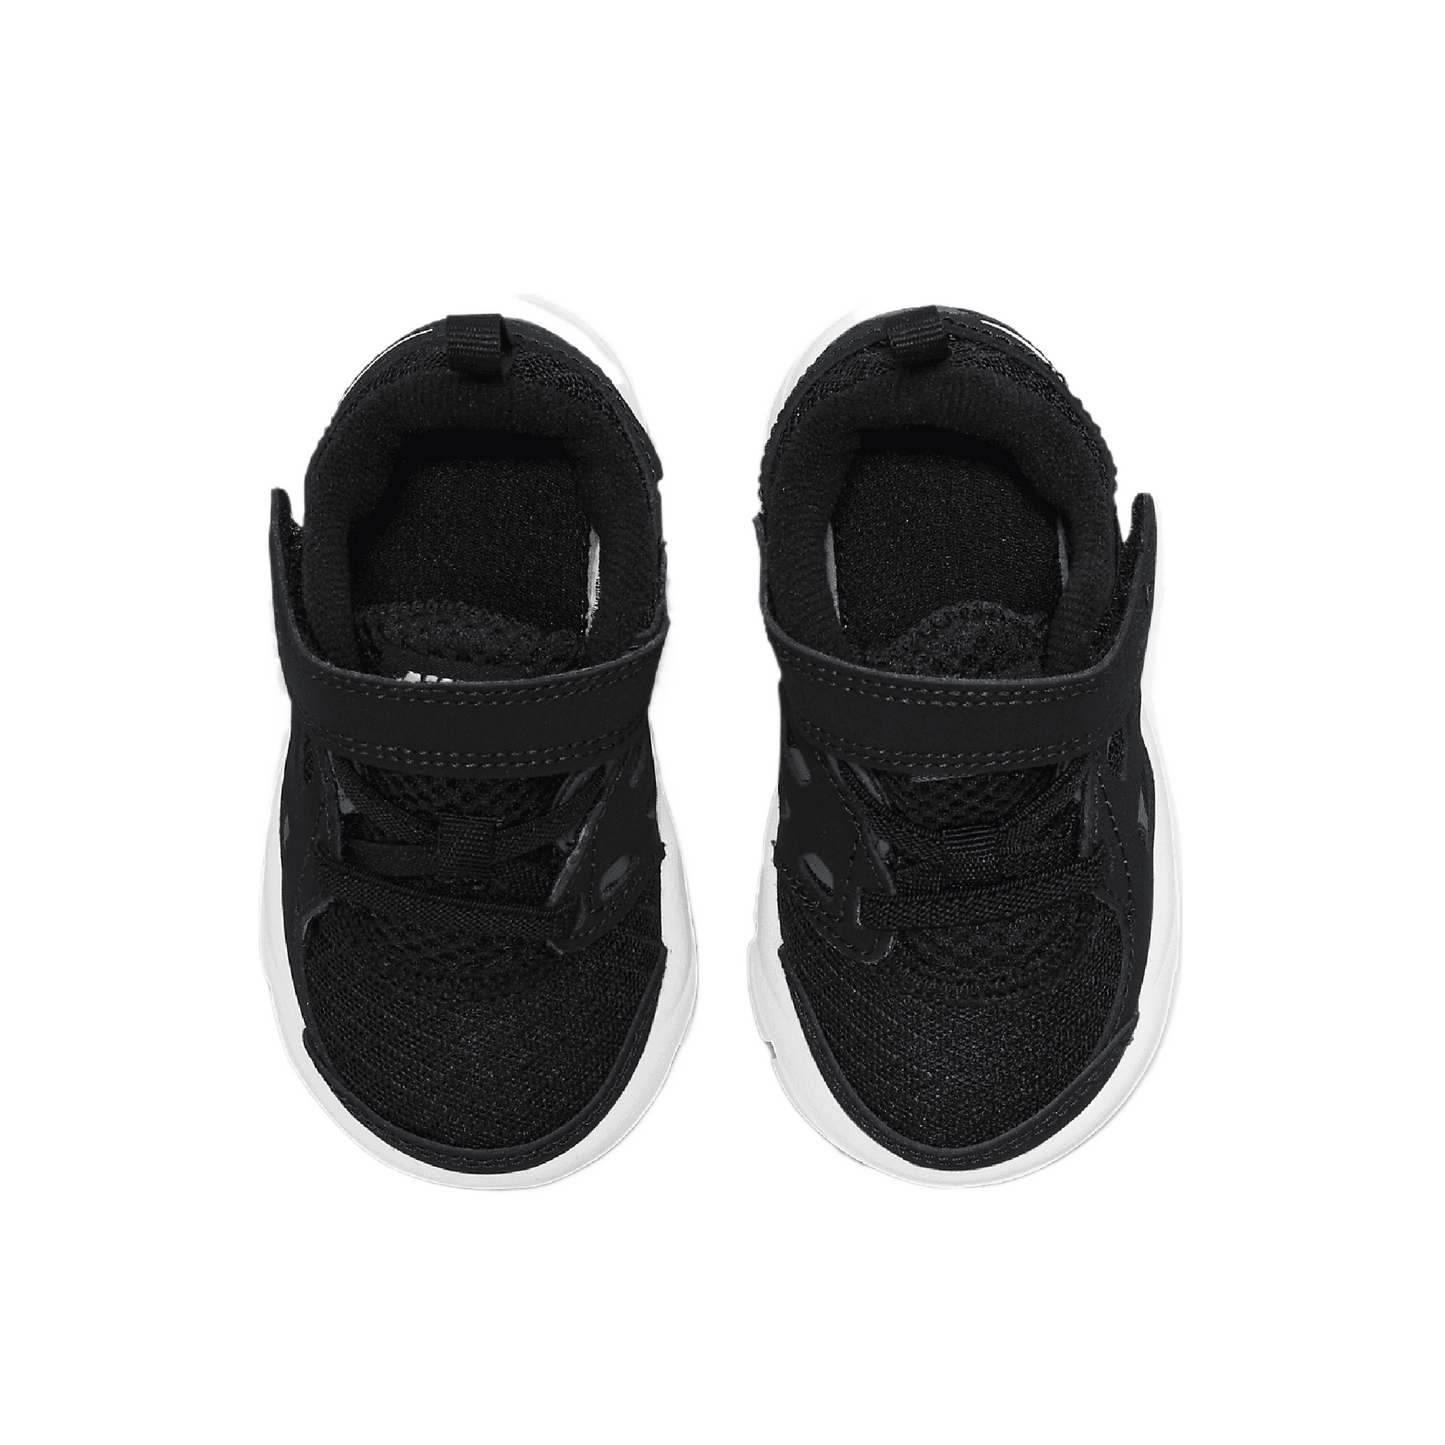 Nike Baby Toddler Free Run 2 Shoes Black/White-Dark Grey DA2692-004